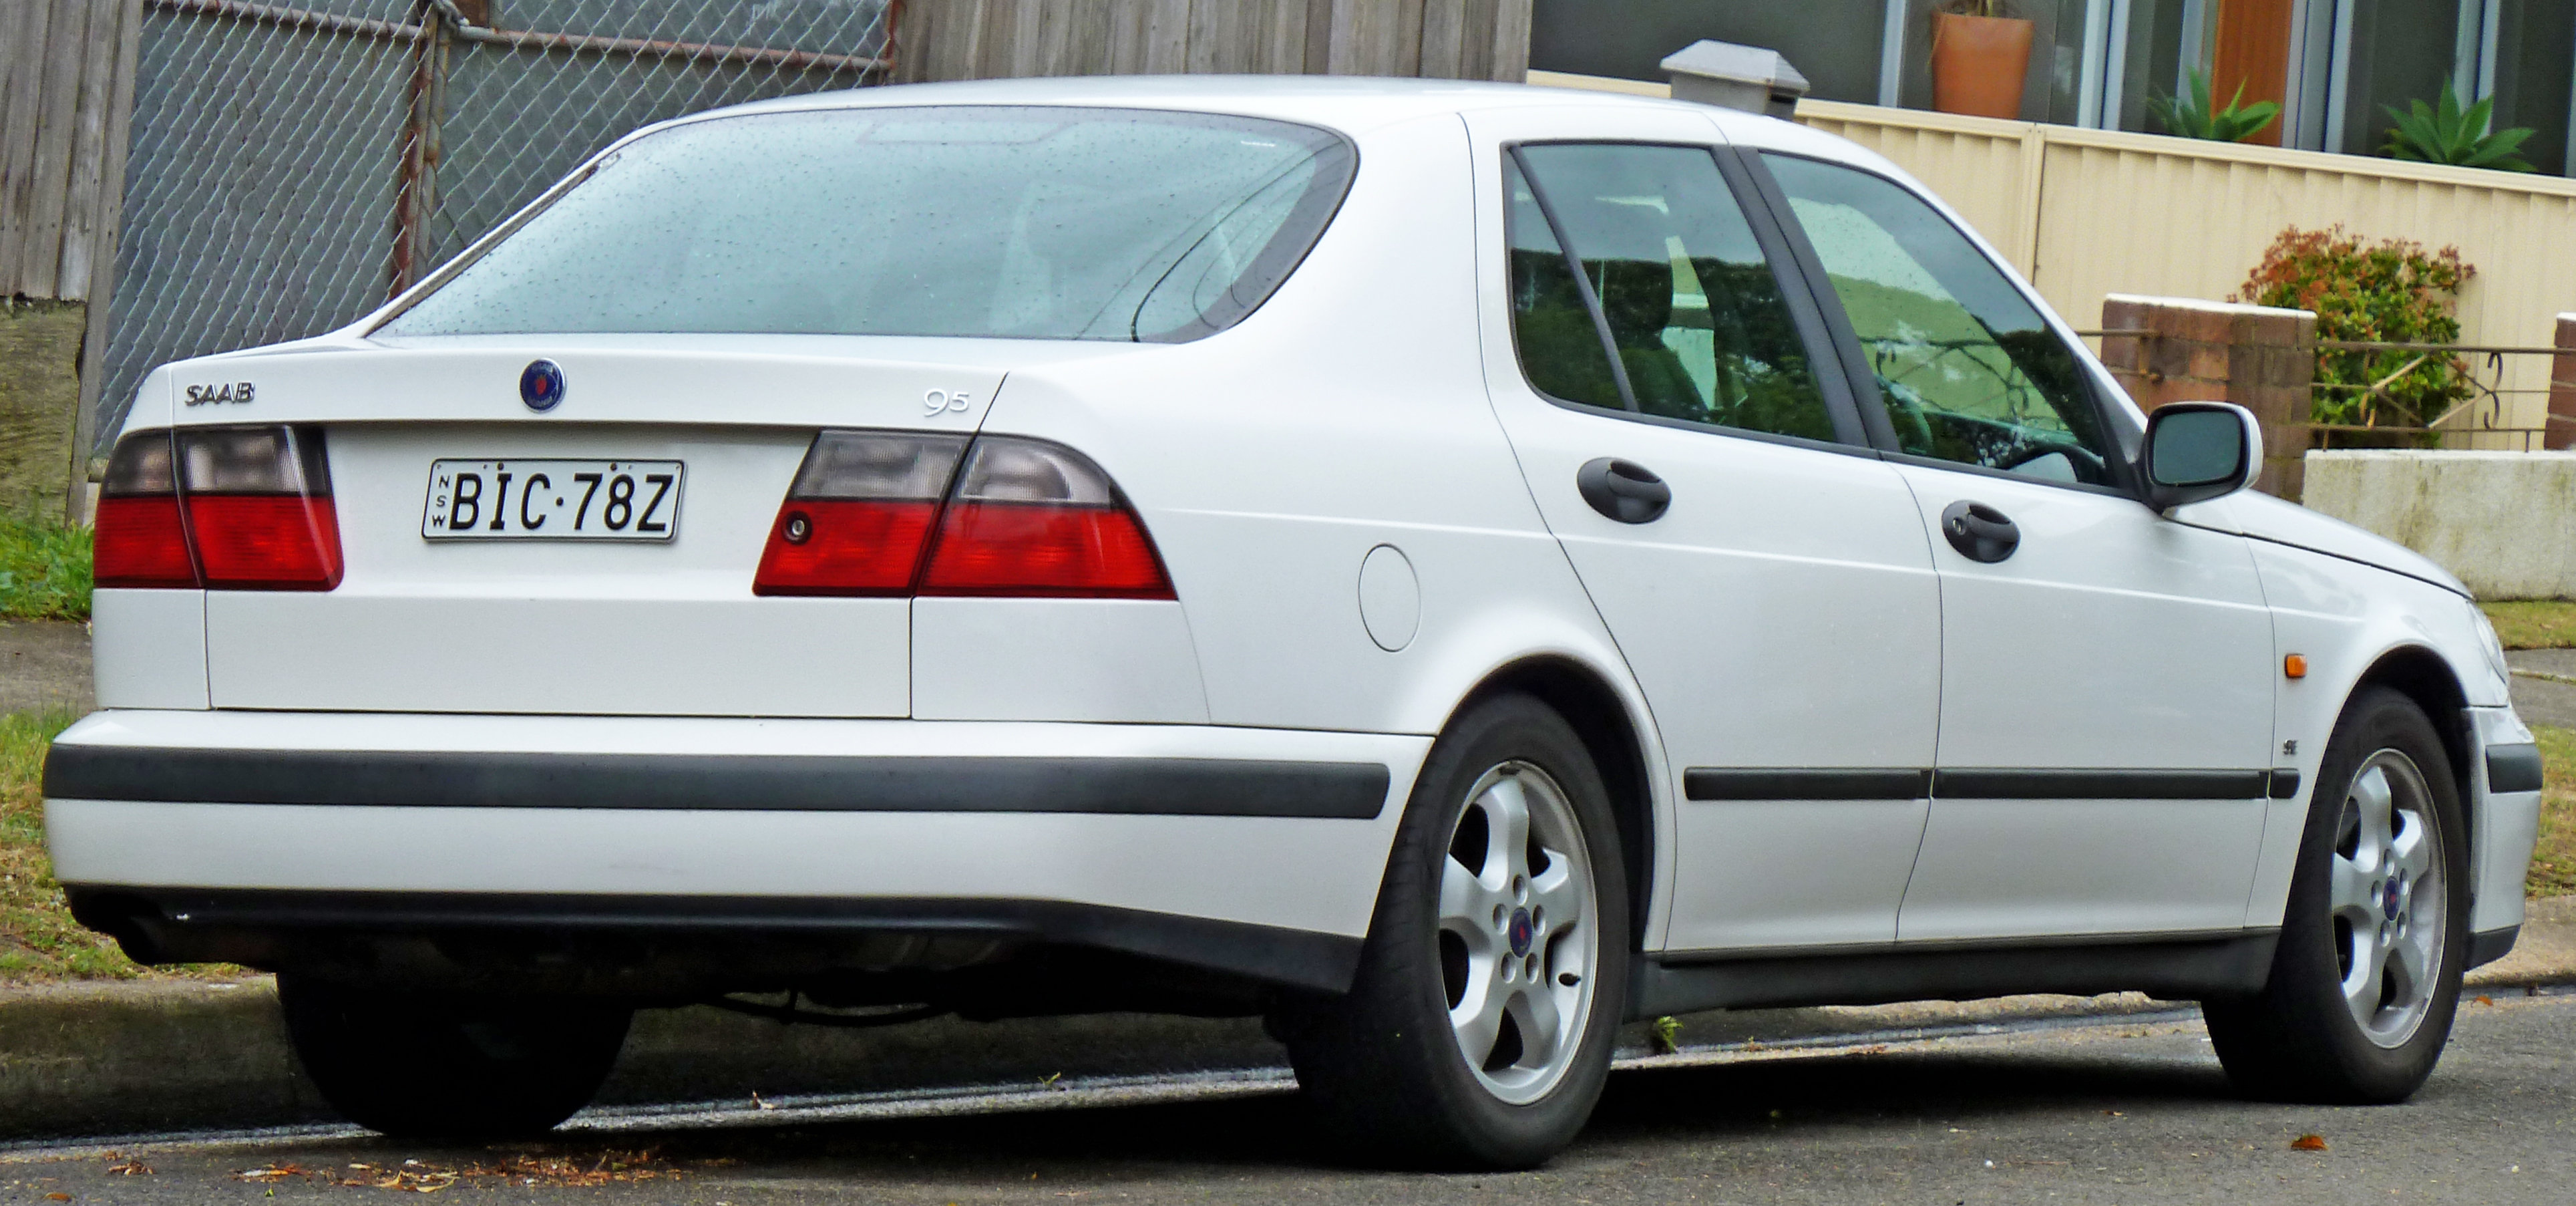 File:1997-2001 Saab 9-5 SE sedan 02.jpg - Wikimedia Commons